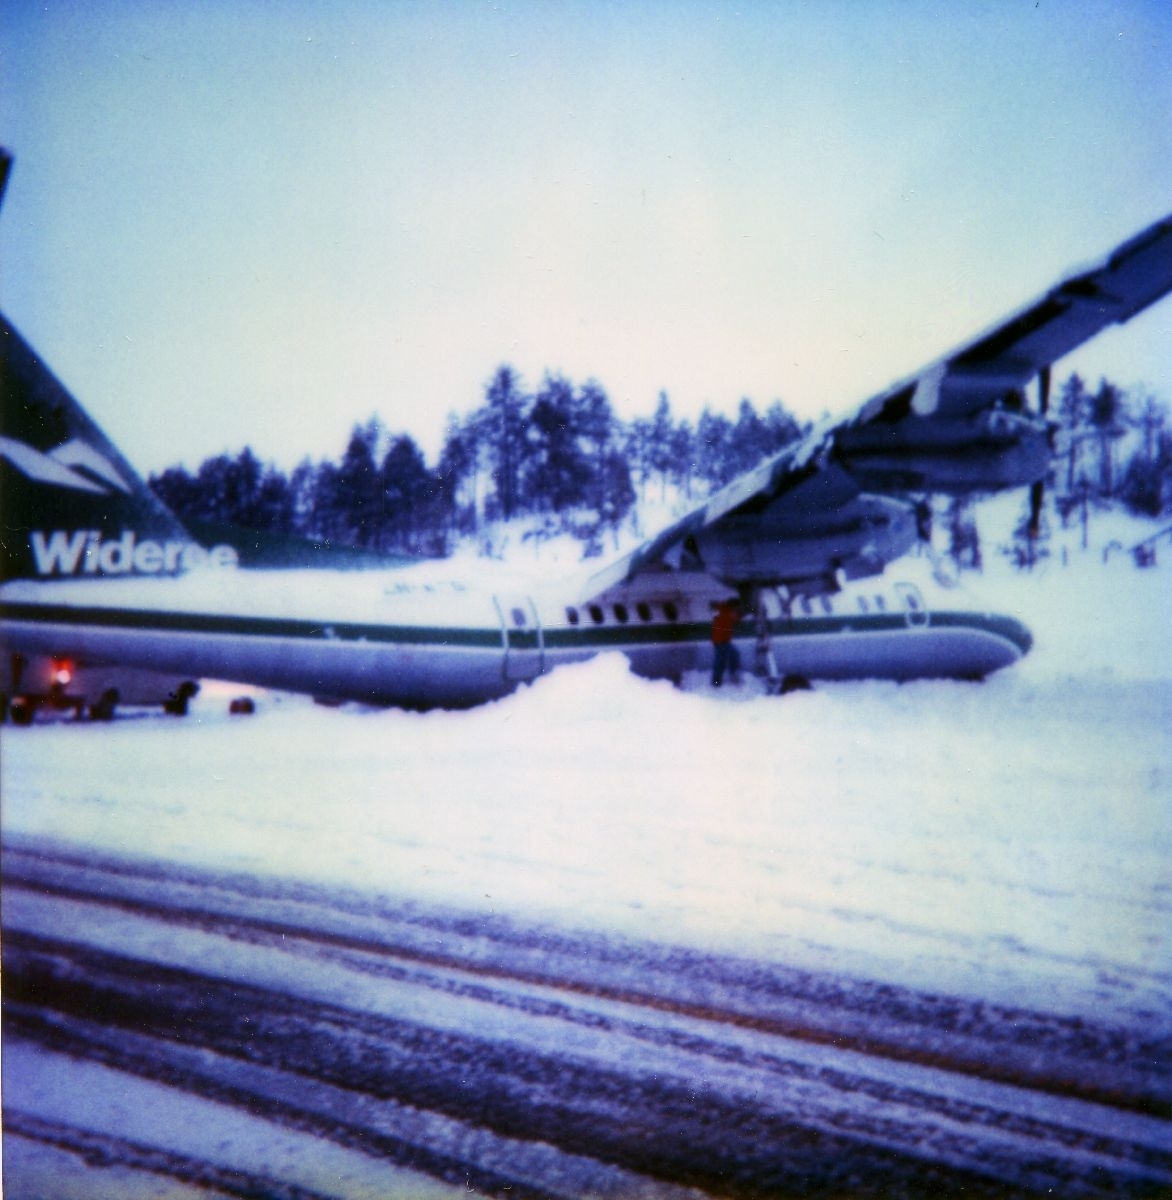 Lufthavn/Flyplass. Førde, Bringeland. Et fly, LN-WFG, DHC-7 Dash7 fra Widerøe, ligger skadet etter krasjlanding, i ei snøfonn ved rullebanen.